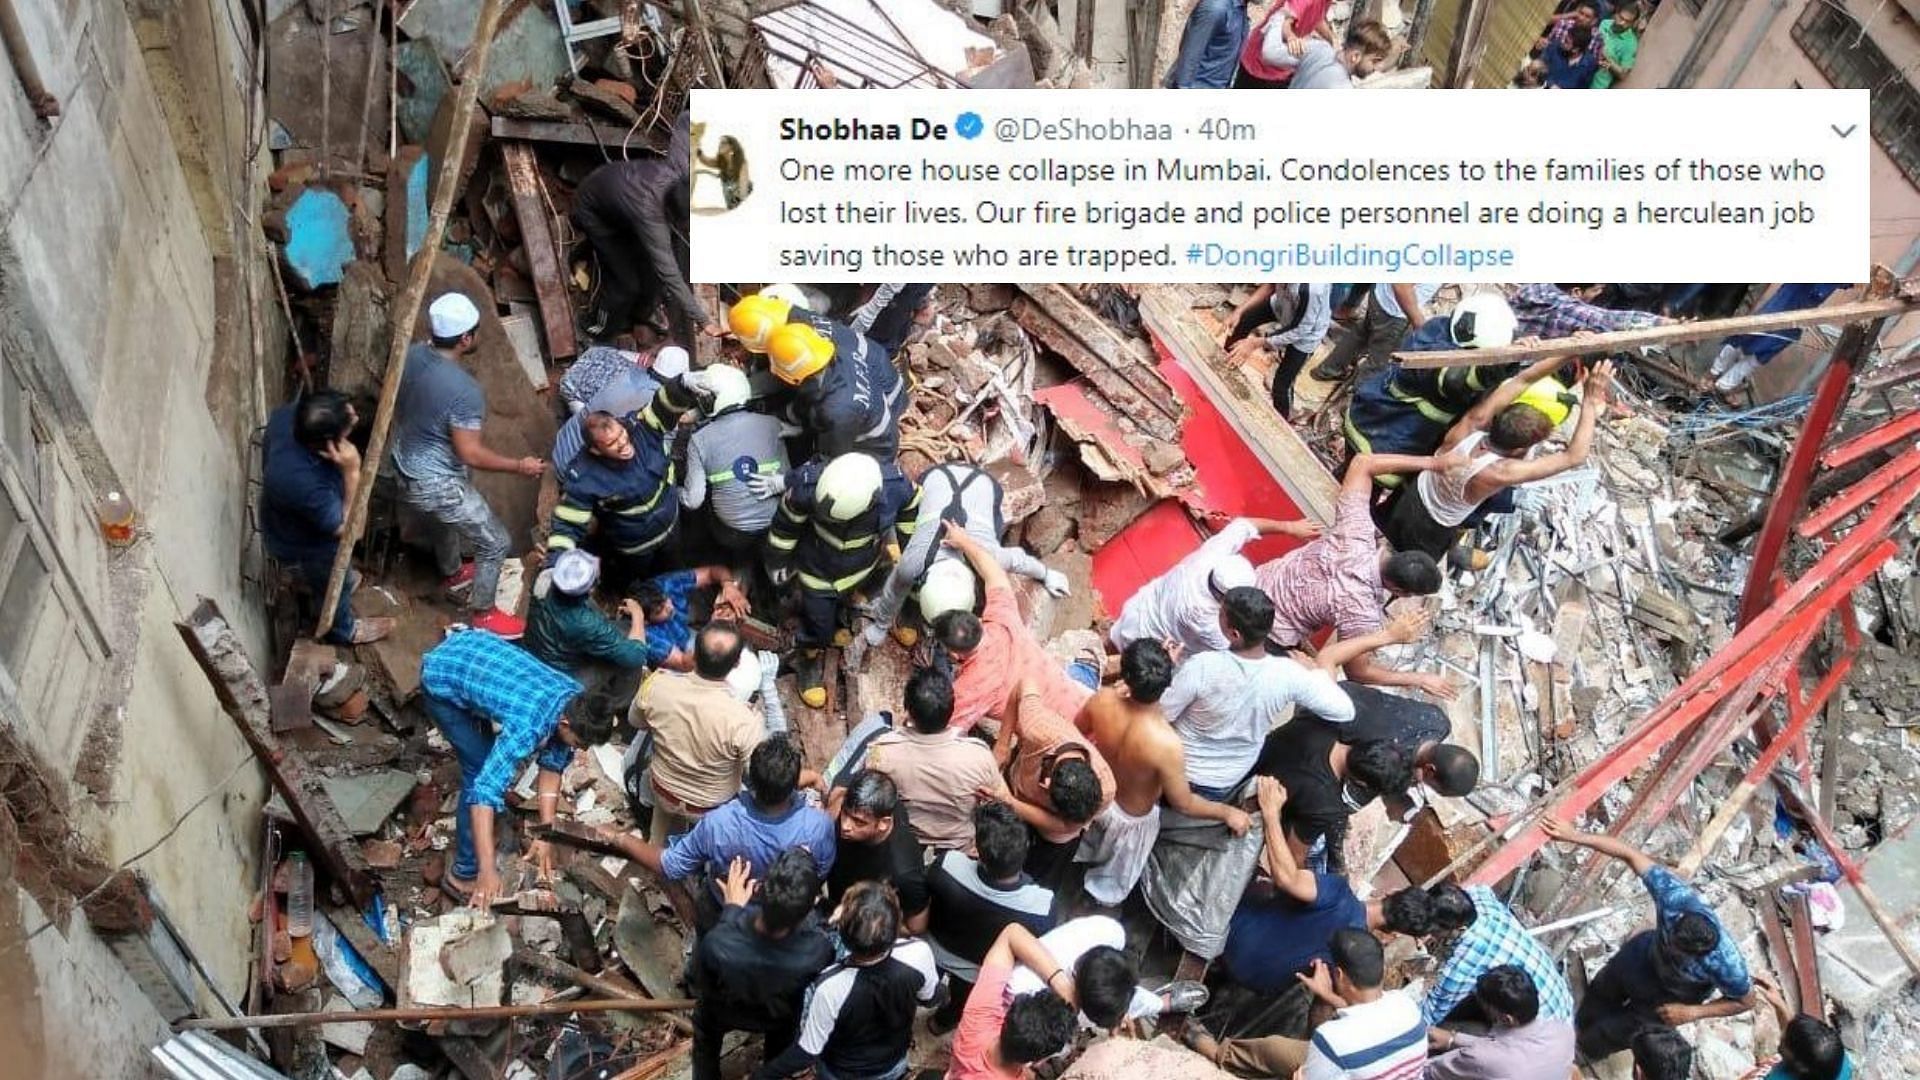 Dongri building collapse in Mumbai